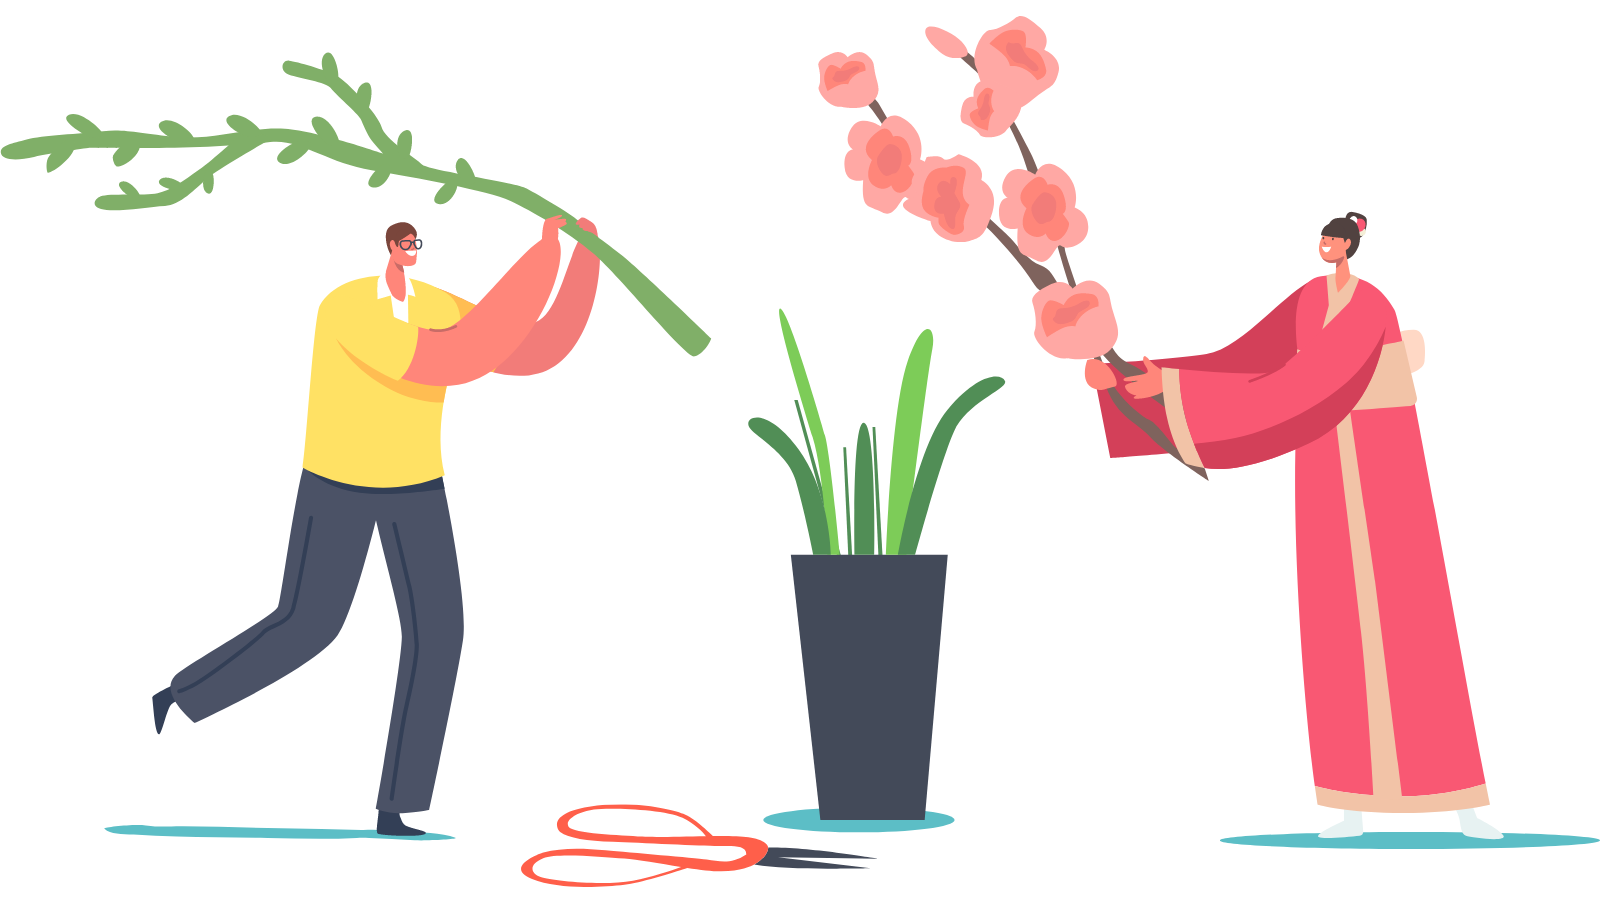 digital illustration of man and women creating an ikebana flower arrangement